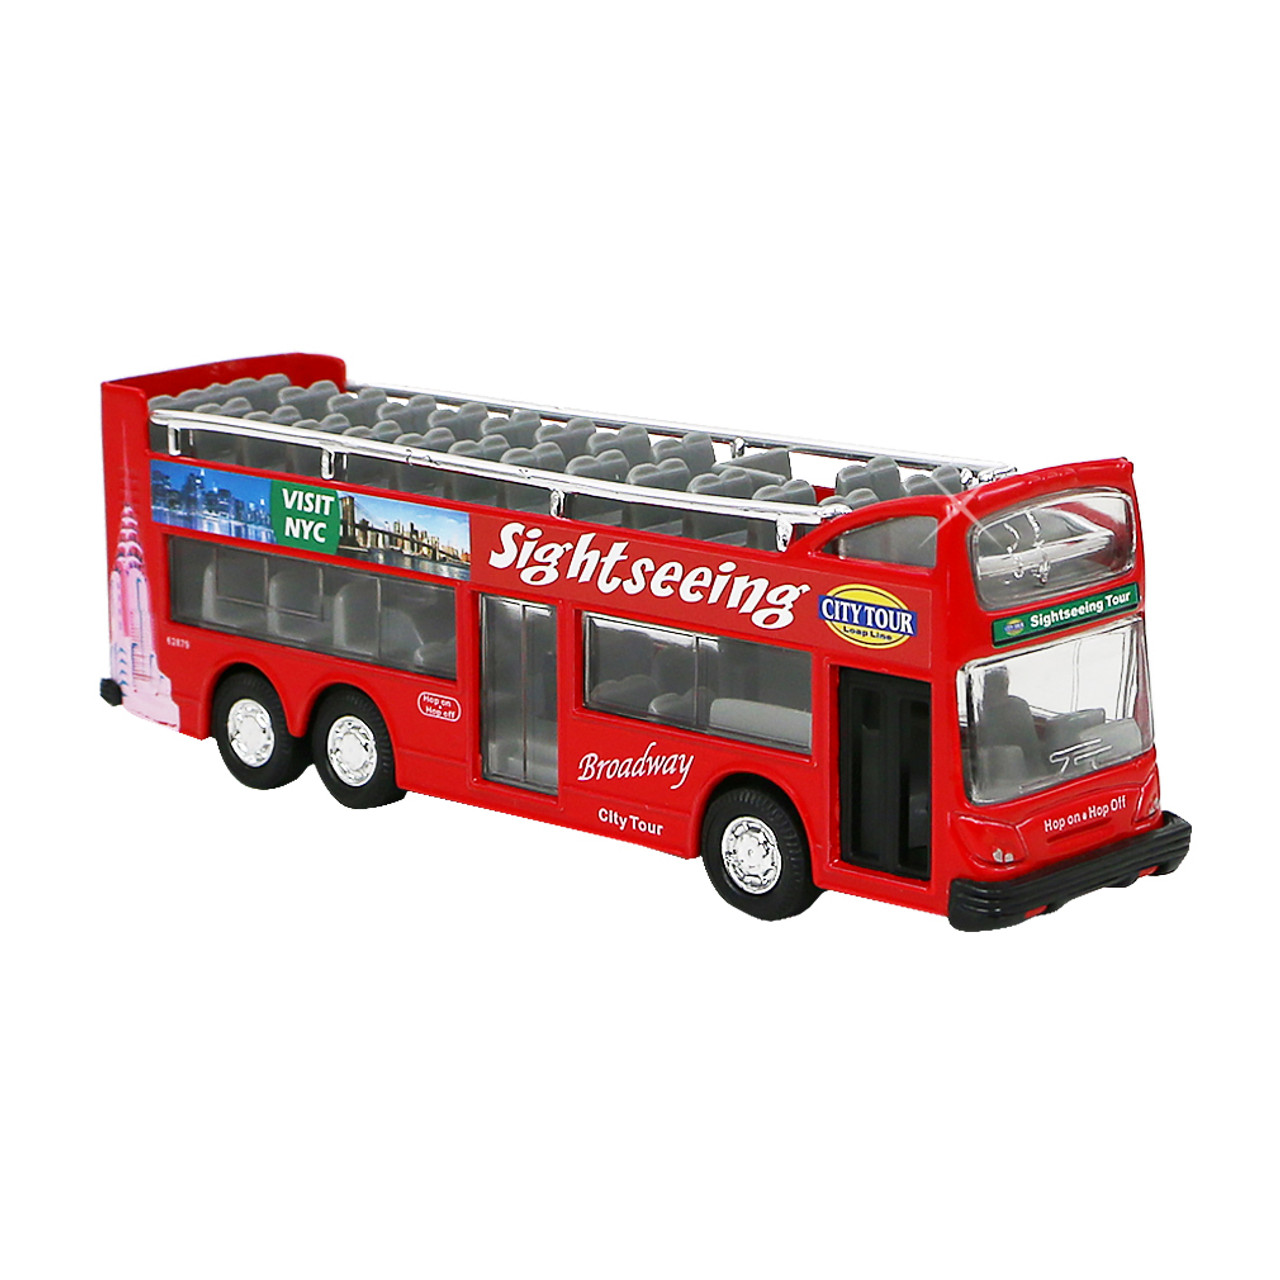 double decker bus toy model